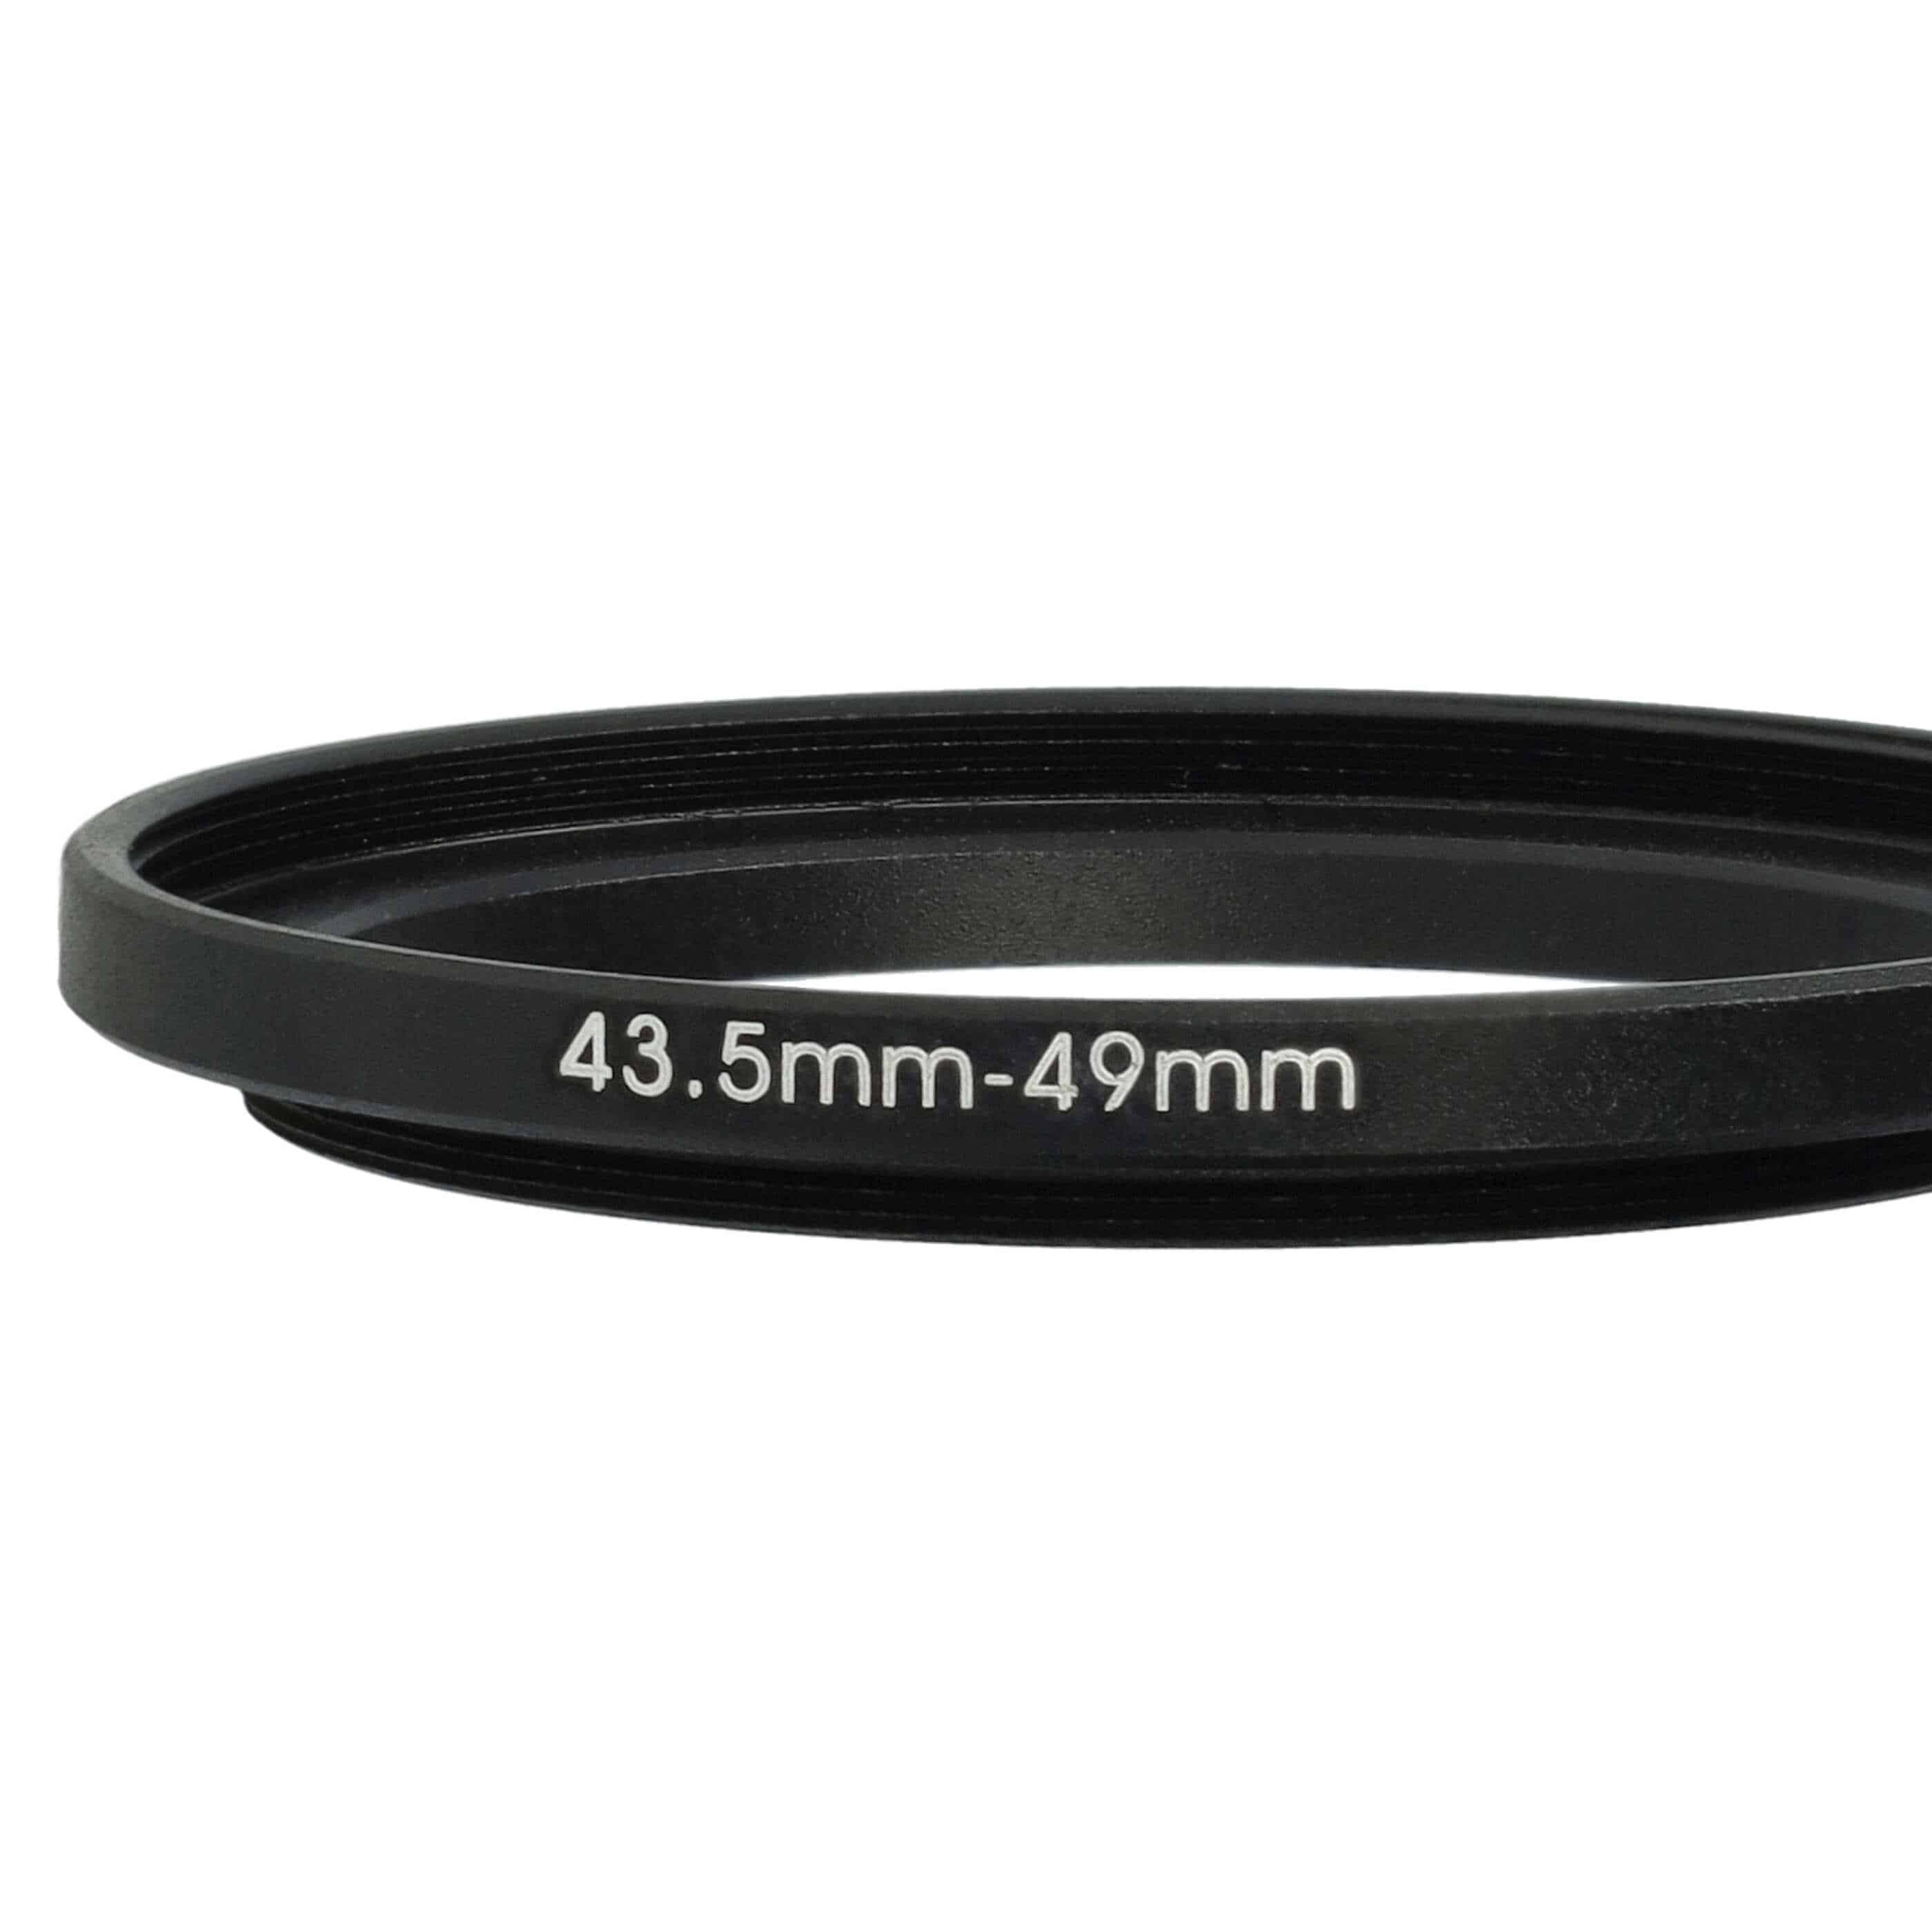 Bague Step-up 43,5 mm vers 49 mm pour divers objectifs d'appareil photo - Adaptateur filtre